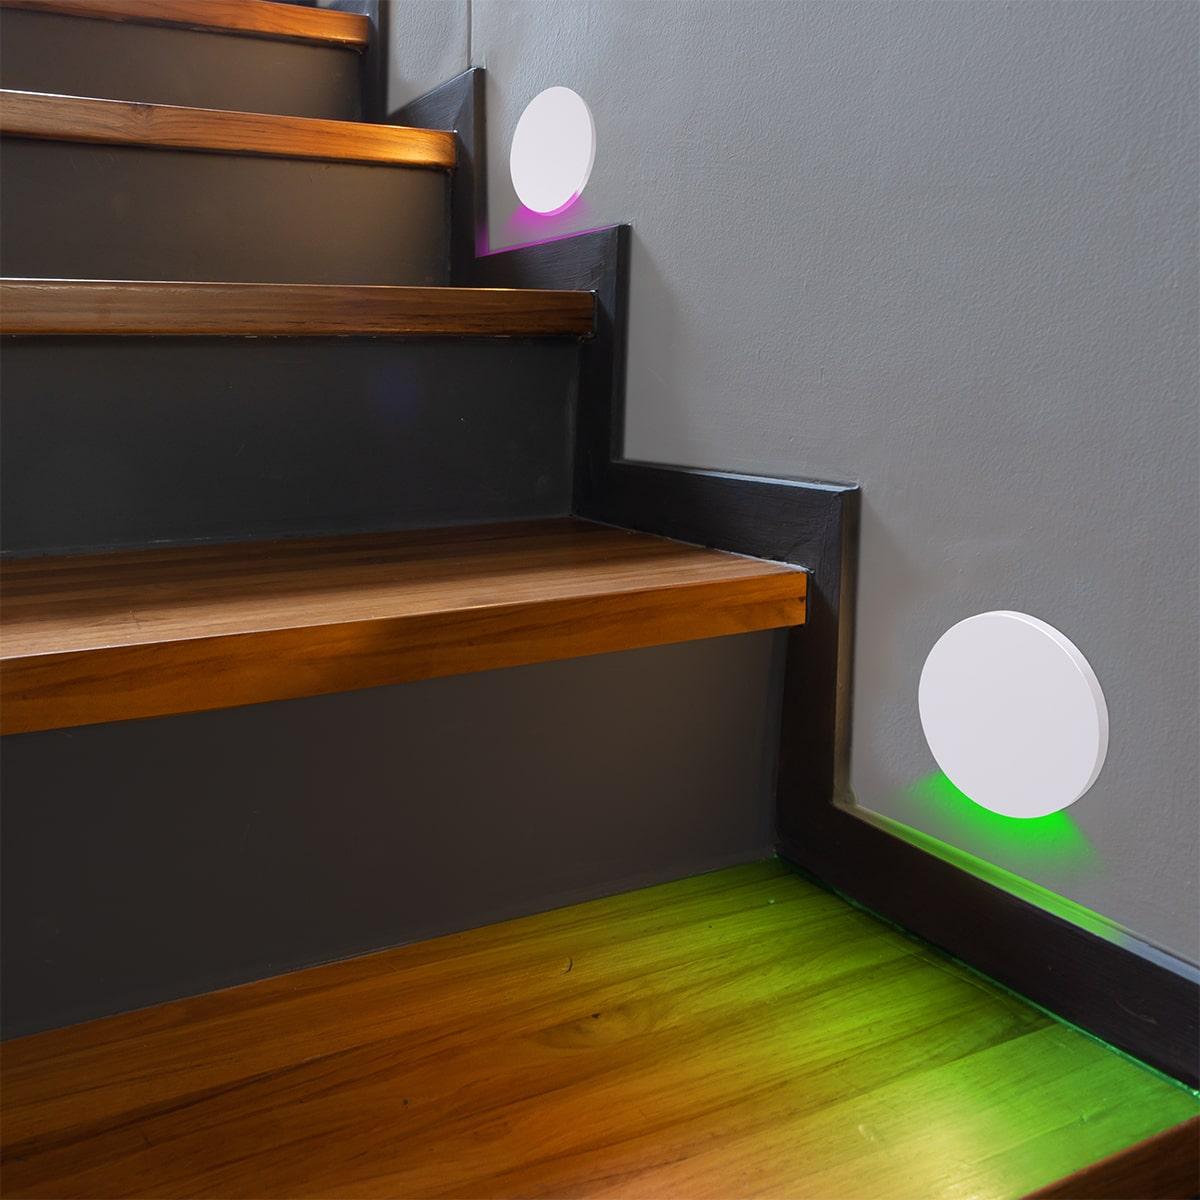 LED Treppenleuchte IP44 rund weiß - Lichtfarbe: RGB Warmweiß 3W - Lichtaustritt: Kato